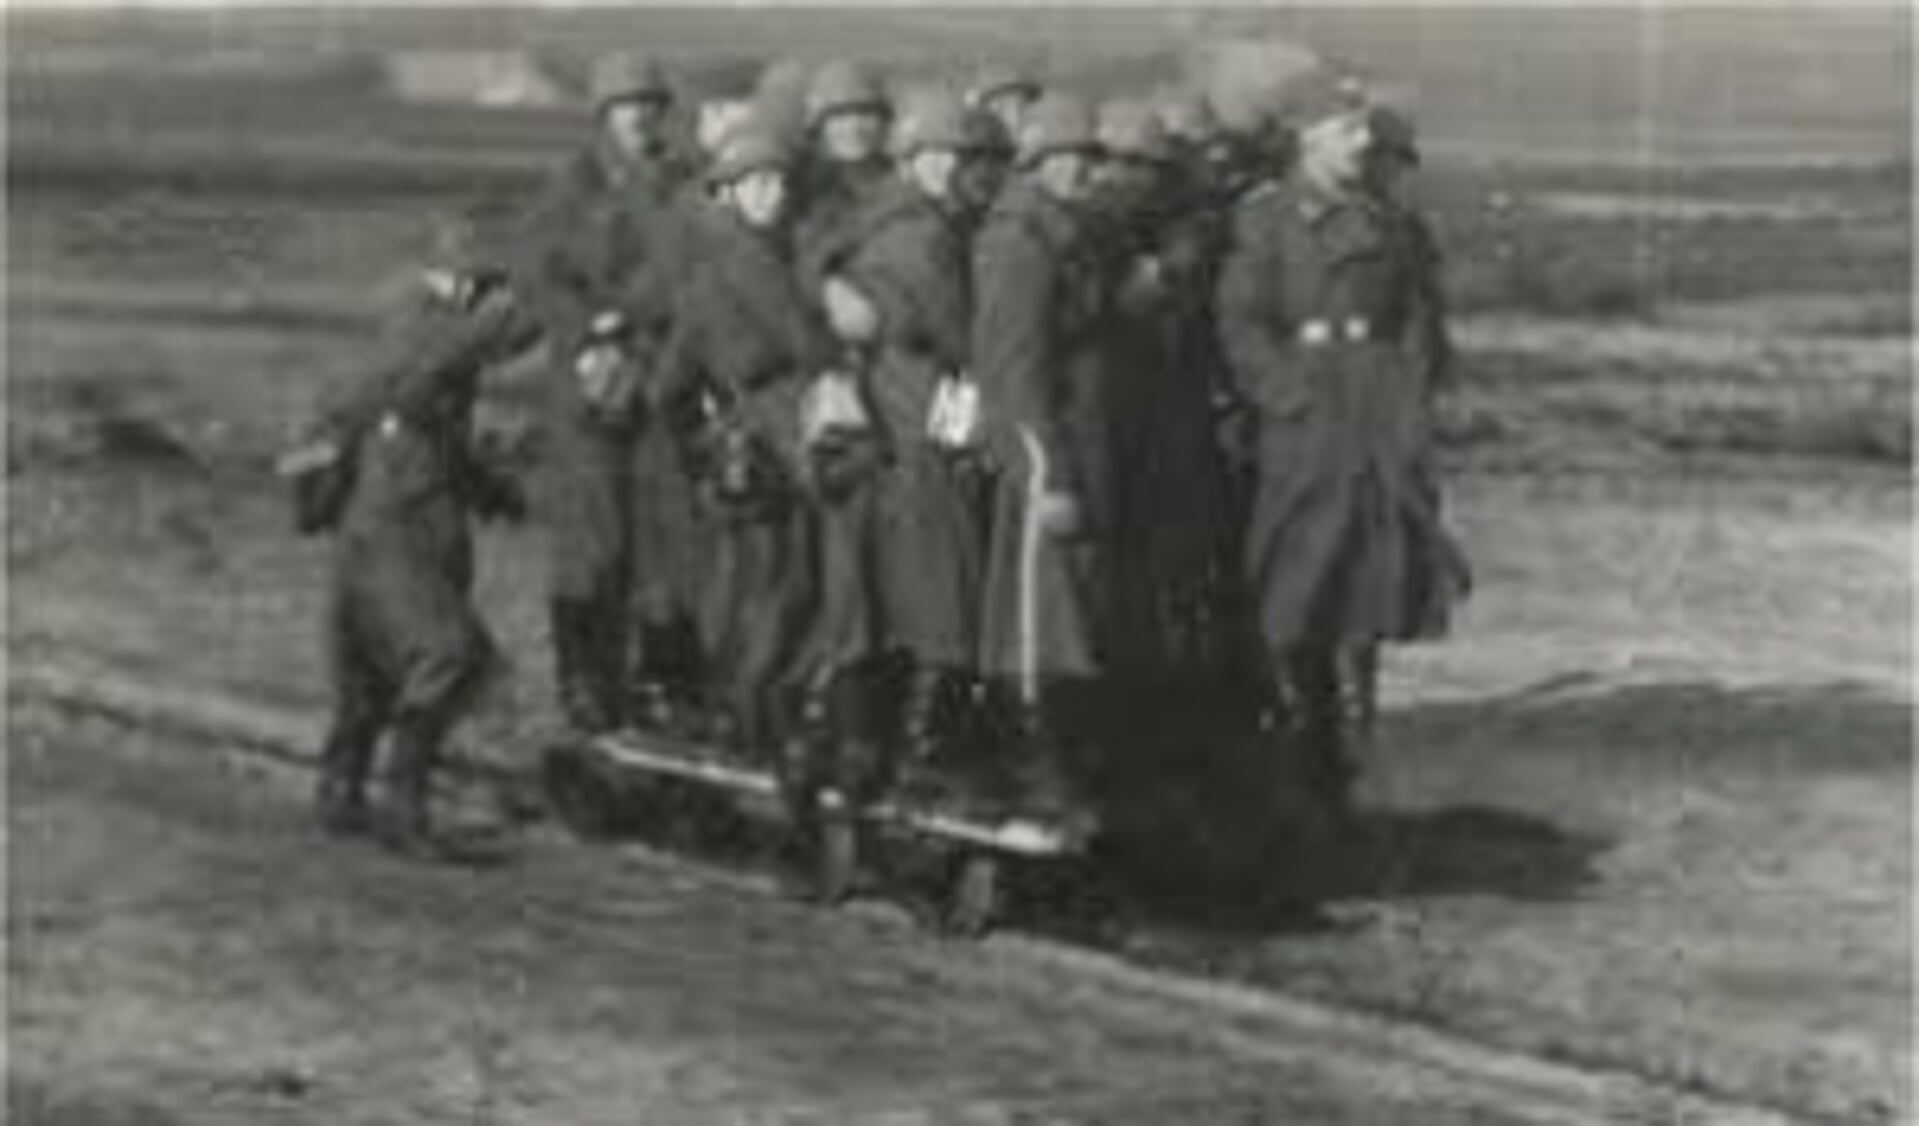 Duitse soldaten spelen met een kiplorrie, rijden mee met een platte lorrie en zijn aan het werk met stenen en een kiplorrie.